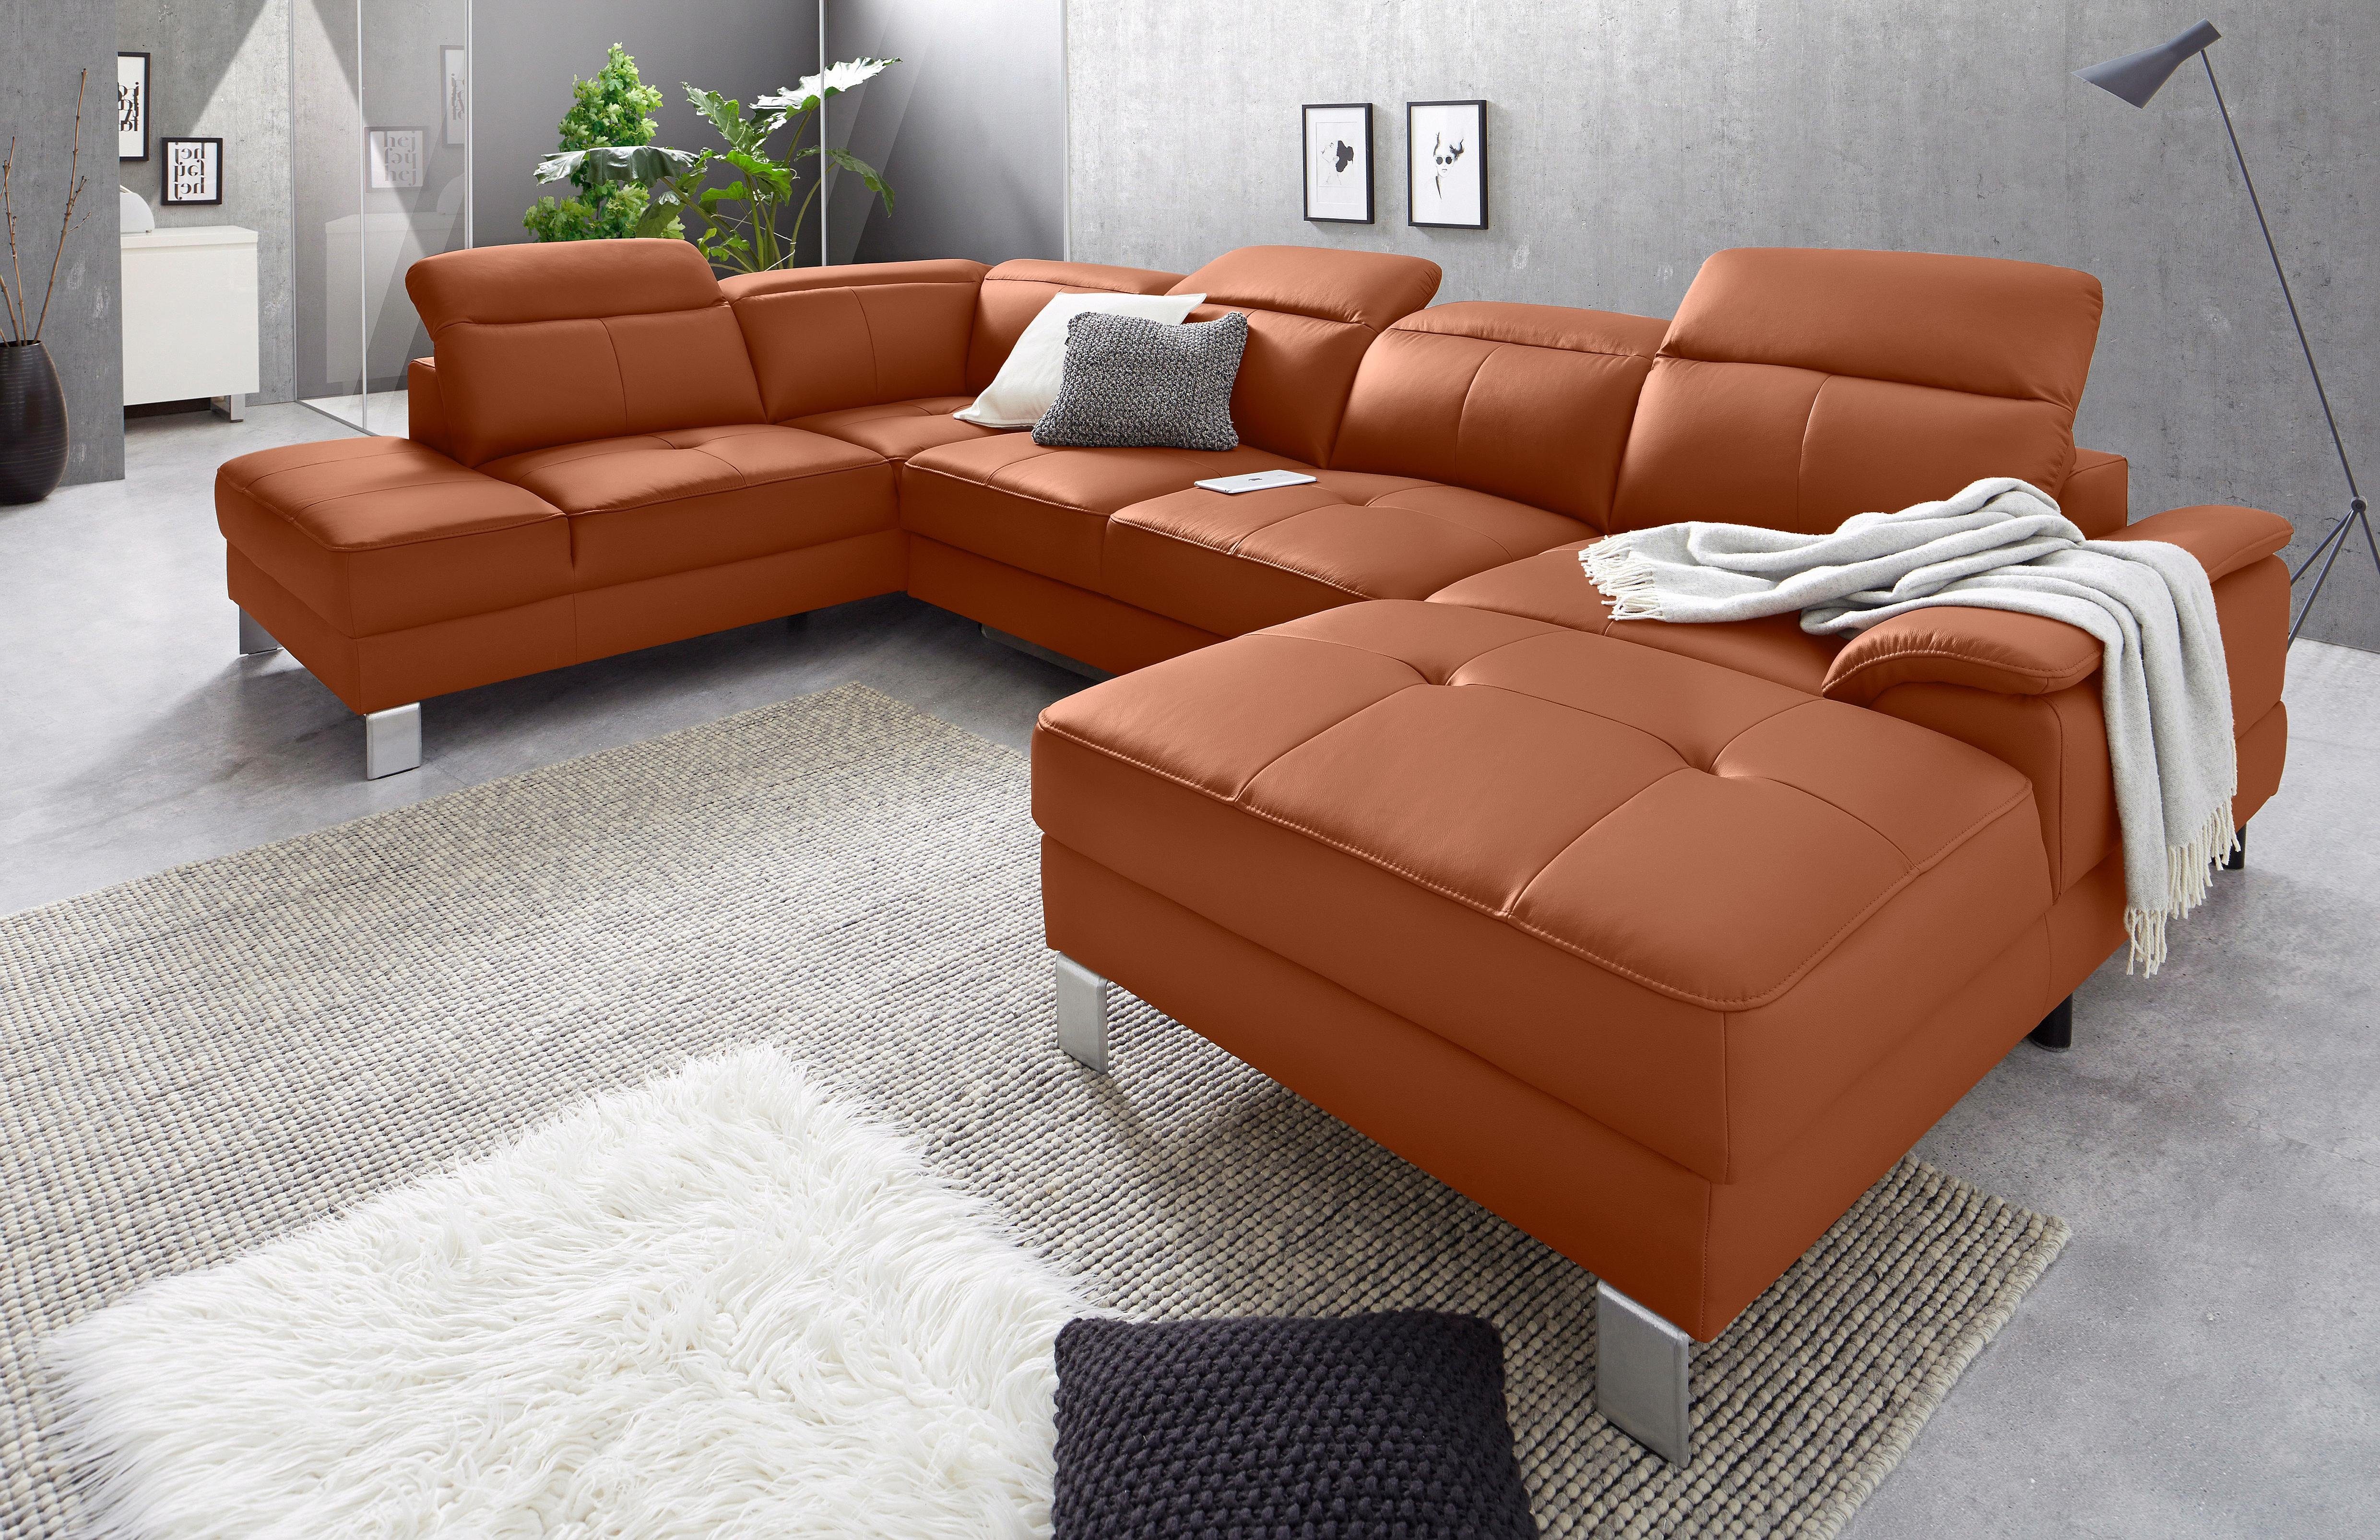 exxpo - sofa fashion Zithoek inclusief hoofd- resp. verstelbare rugleuning, naar keuze met slaapfunctie en bedkist